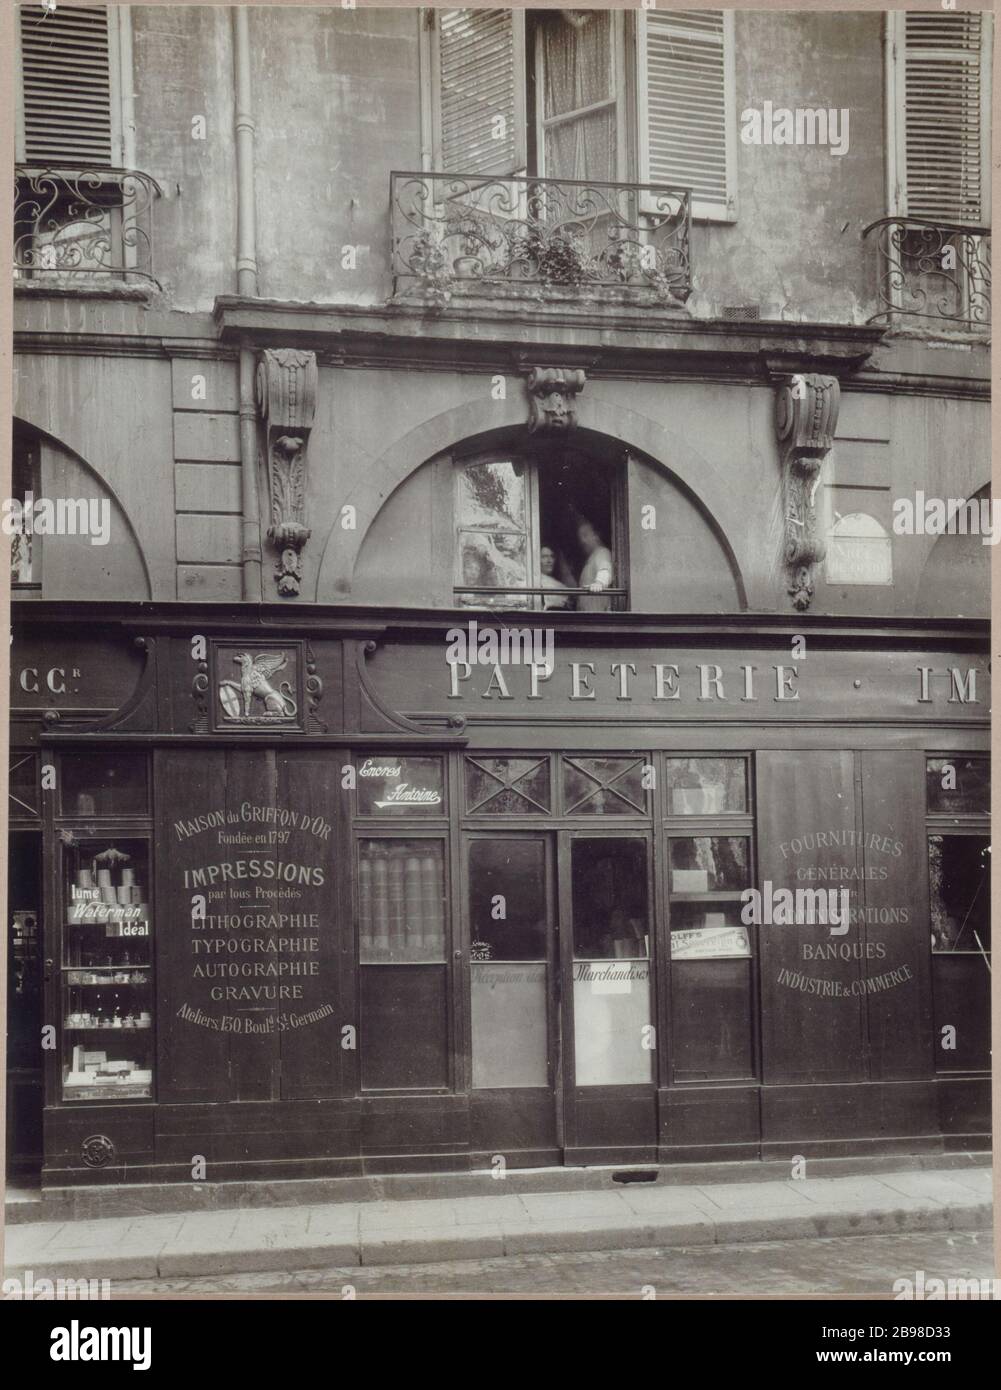 1 RUE DE CONDE - MAISON DU GRIFFON D'OR 1 rue de Condé, maison du Griffon d'Or. Paris (VIème arr.). Photo de Charles Lansiaux (1855-1939). Paris, musée Carnavalet. Banque D'Images